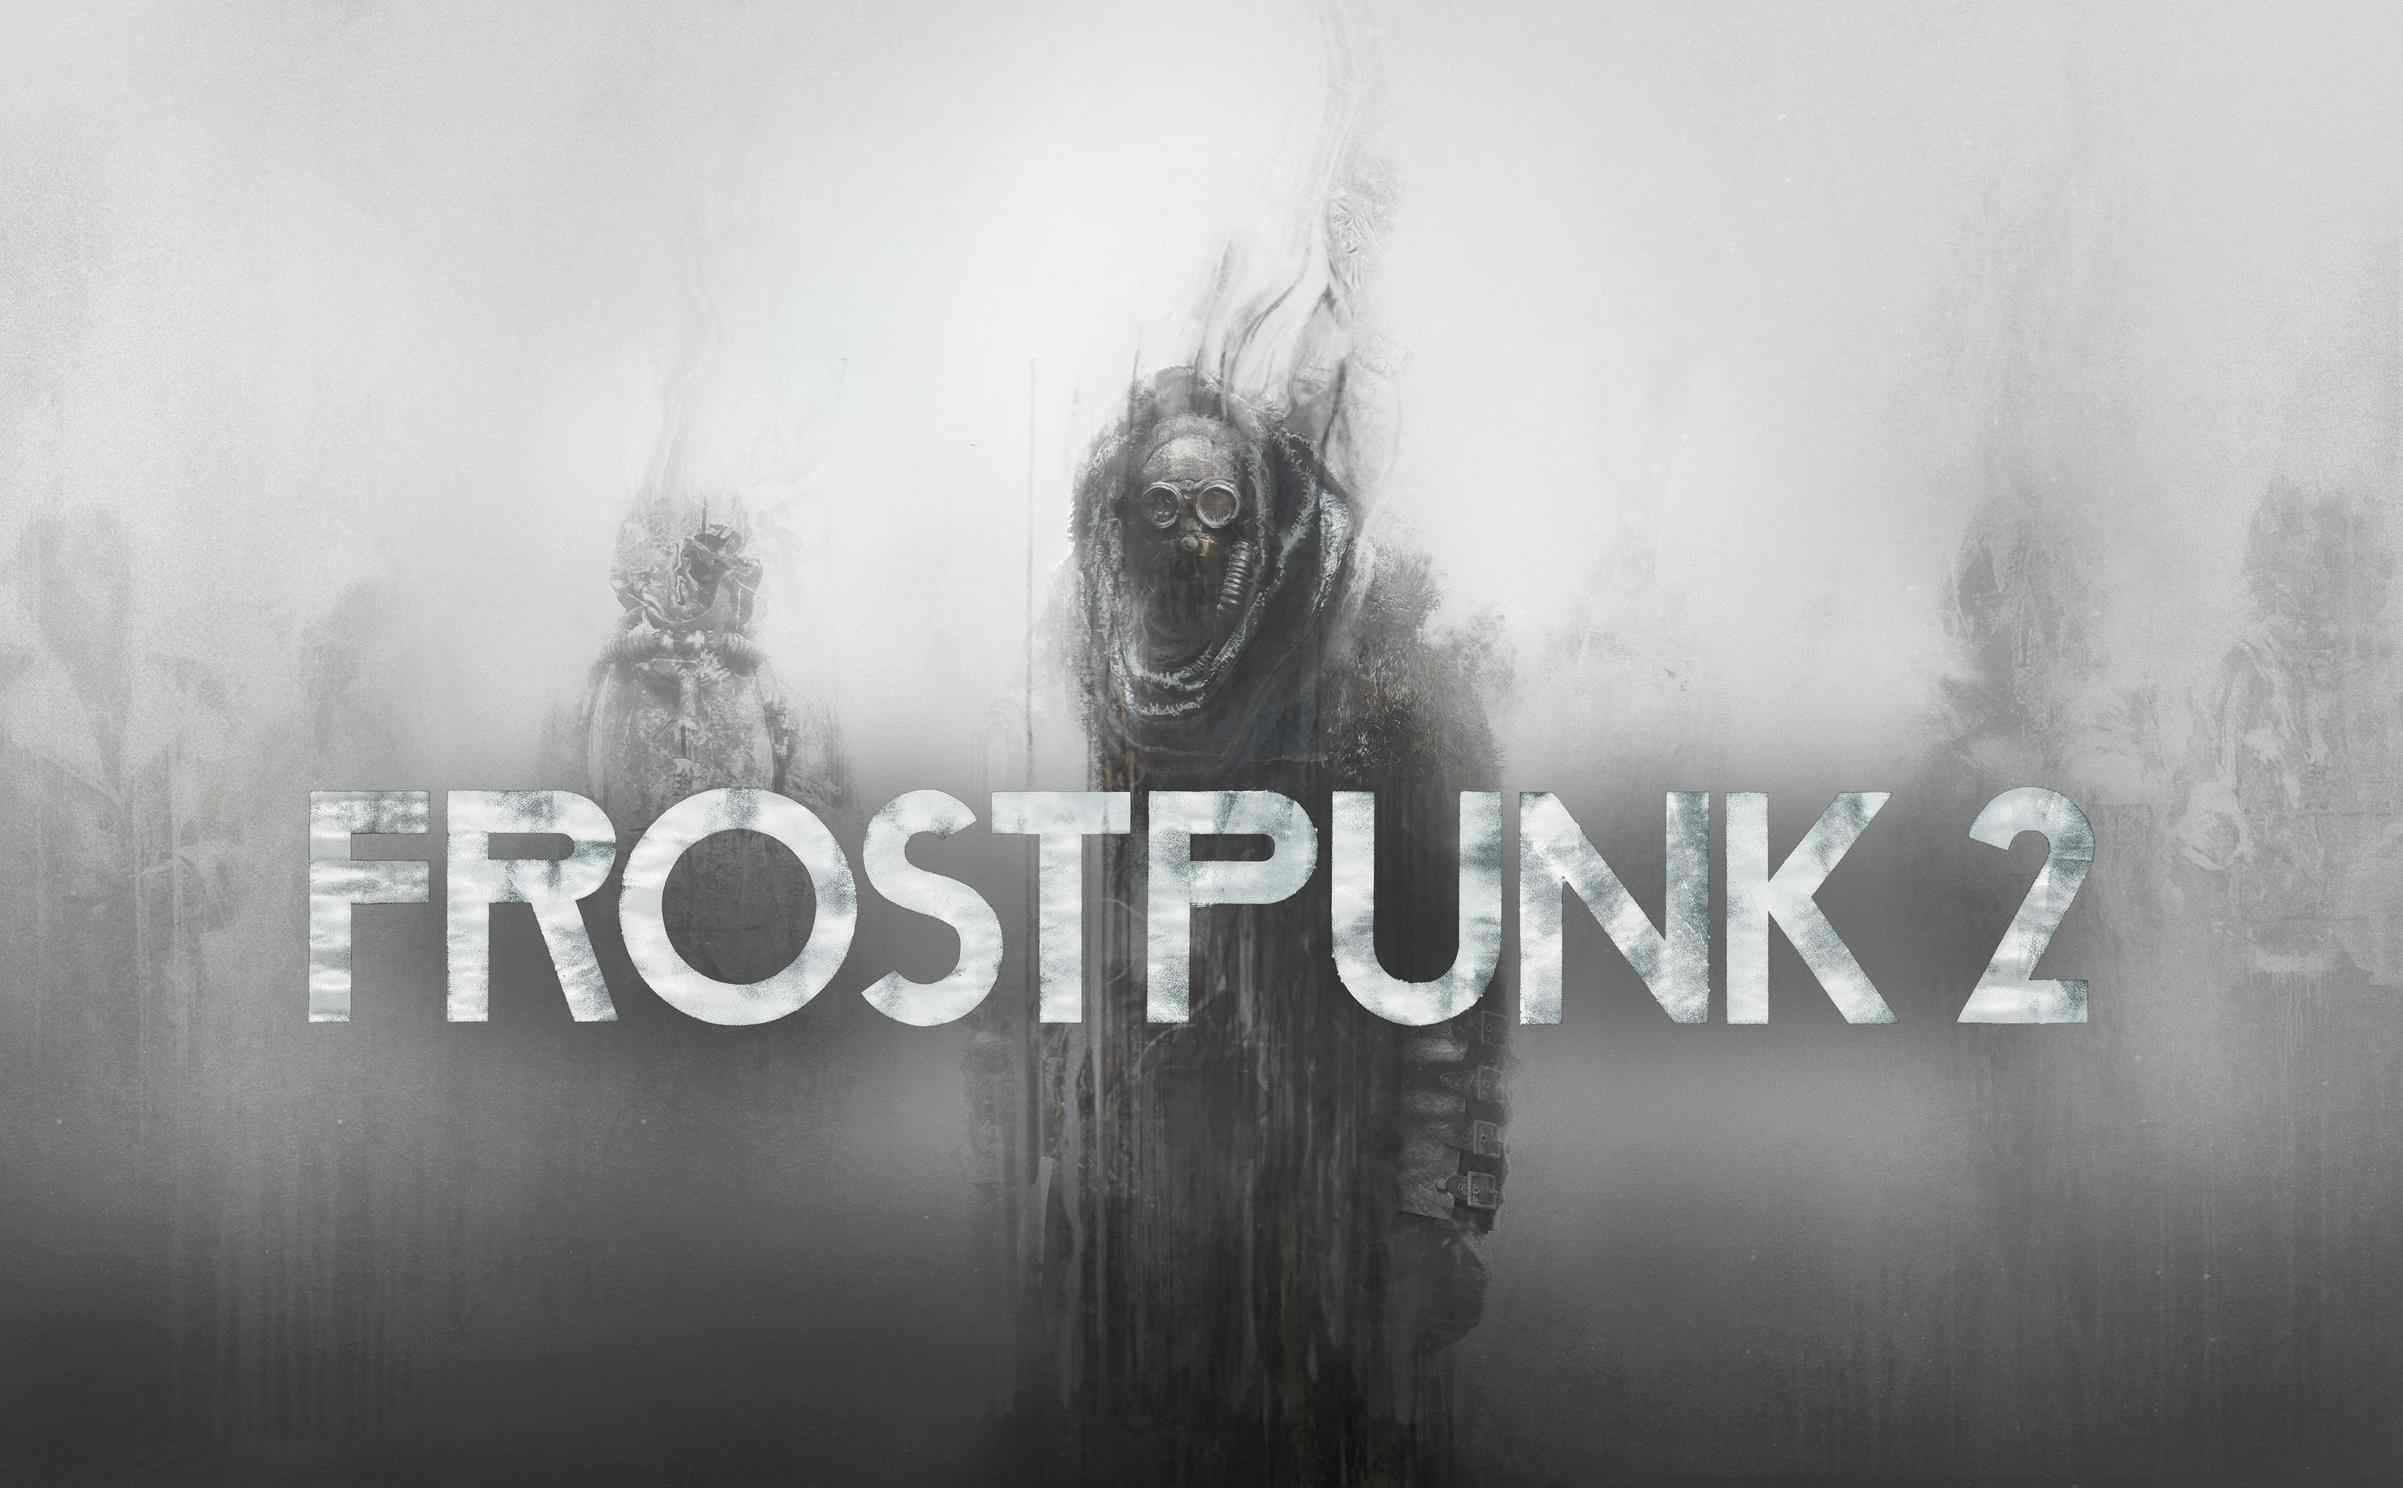 Frostpunk 2: trailer brutale per il sequel